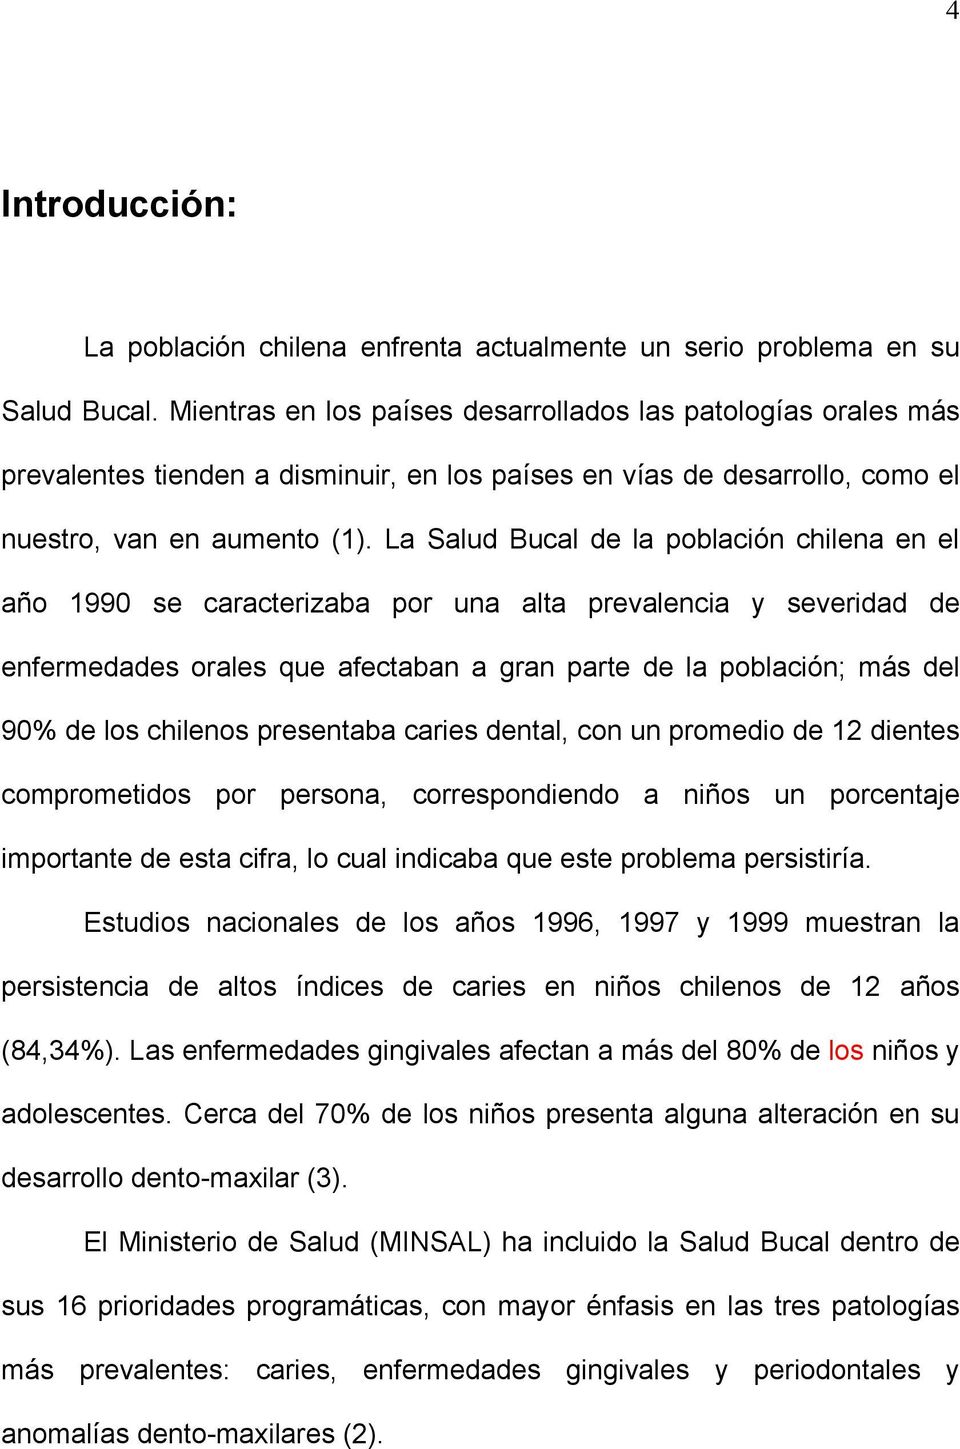 La Salud Bucal de la población chilena en el año 1990 se caracterizaba por una alta prevalencia y severidad de enfermedades orales que afectaban a gran parte de la población; más del 90% de los